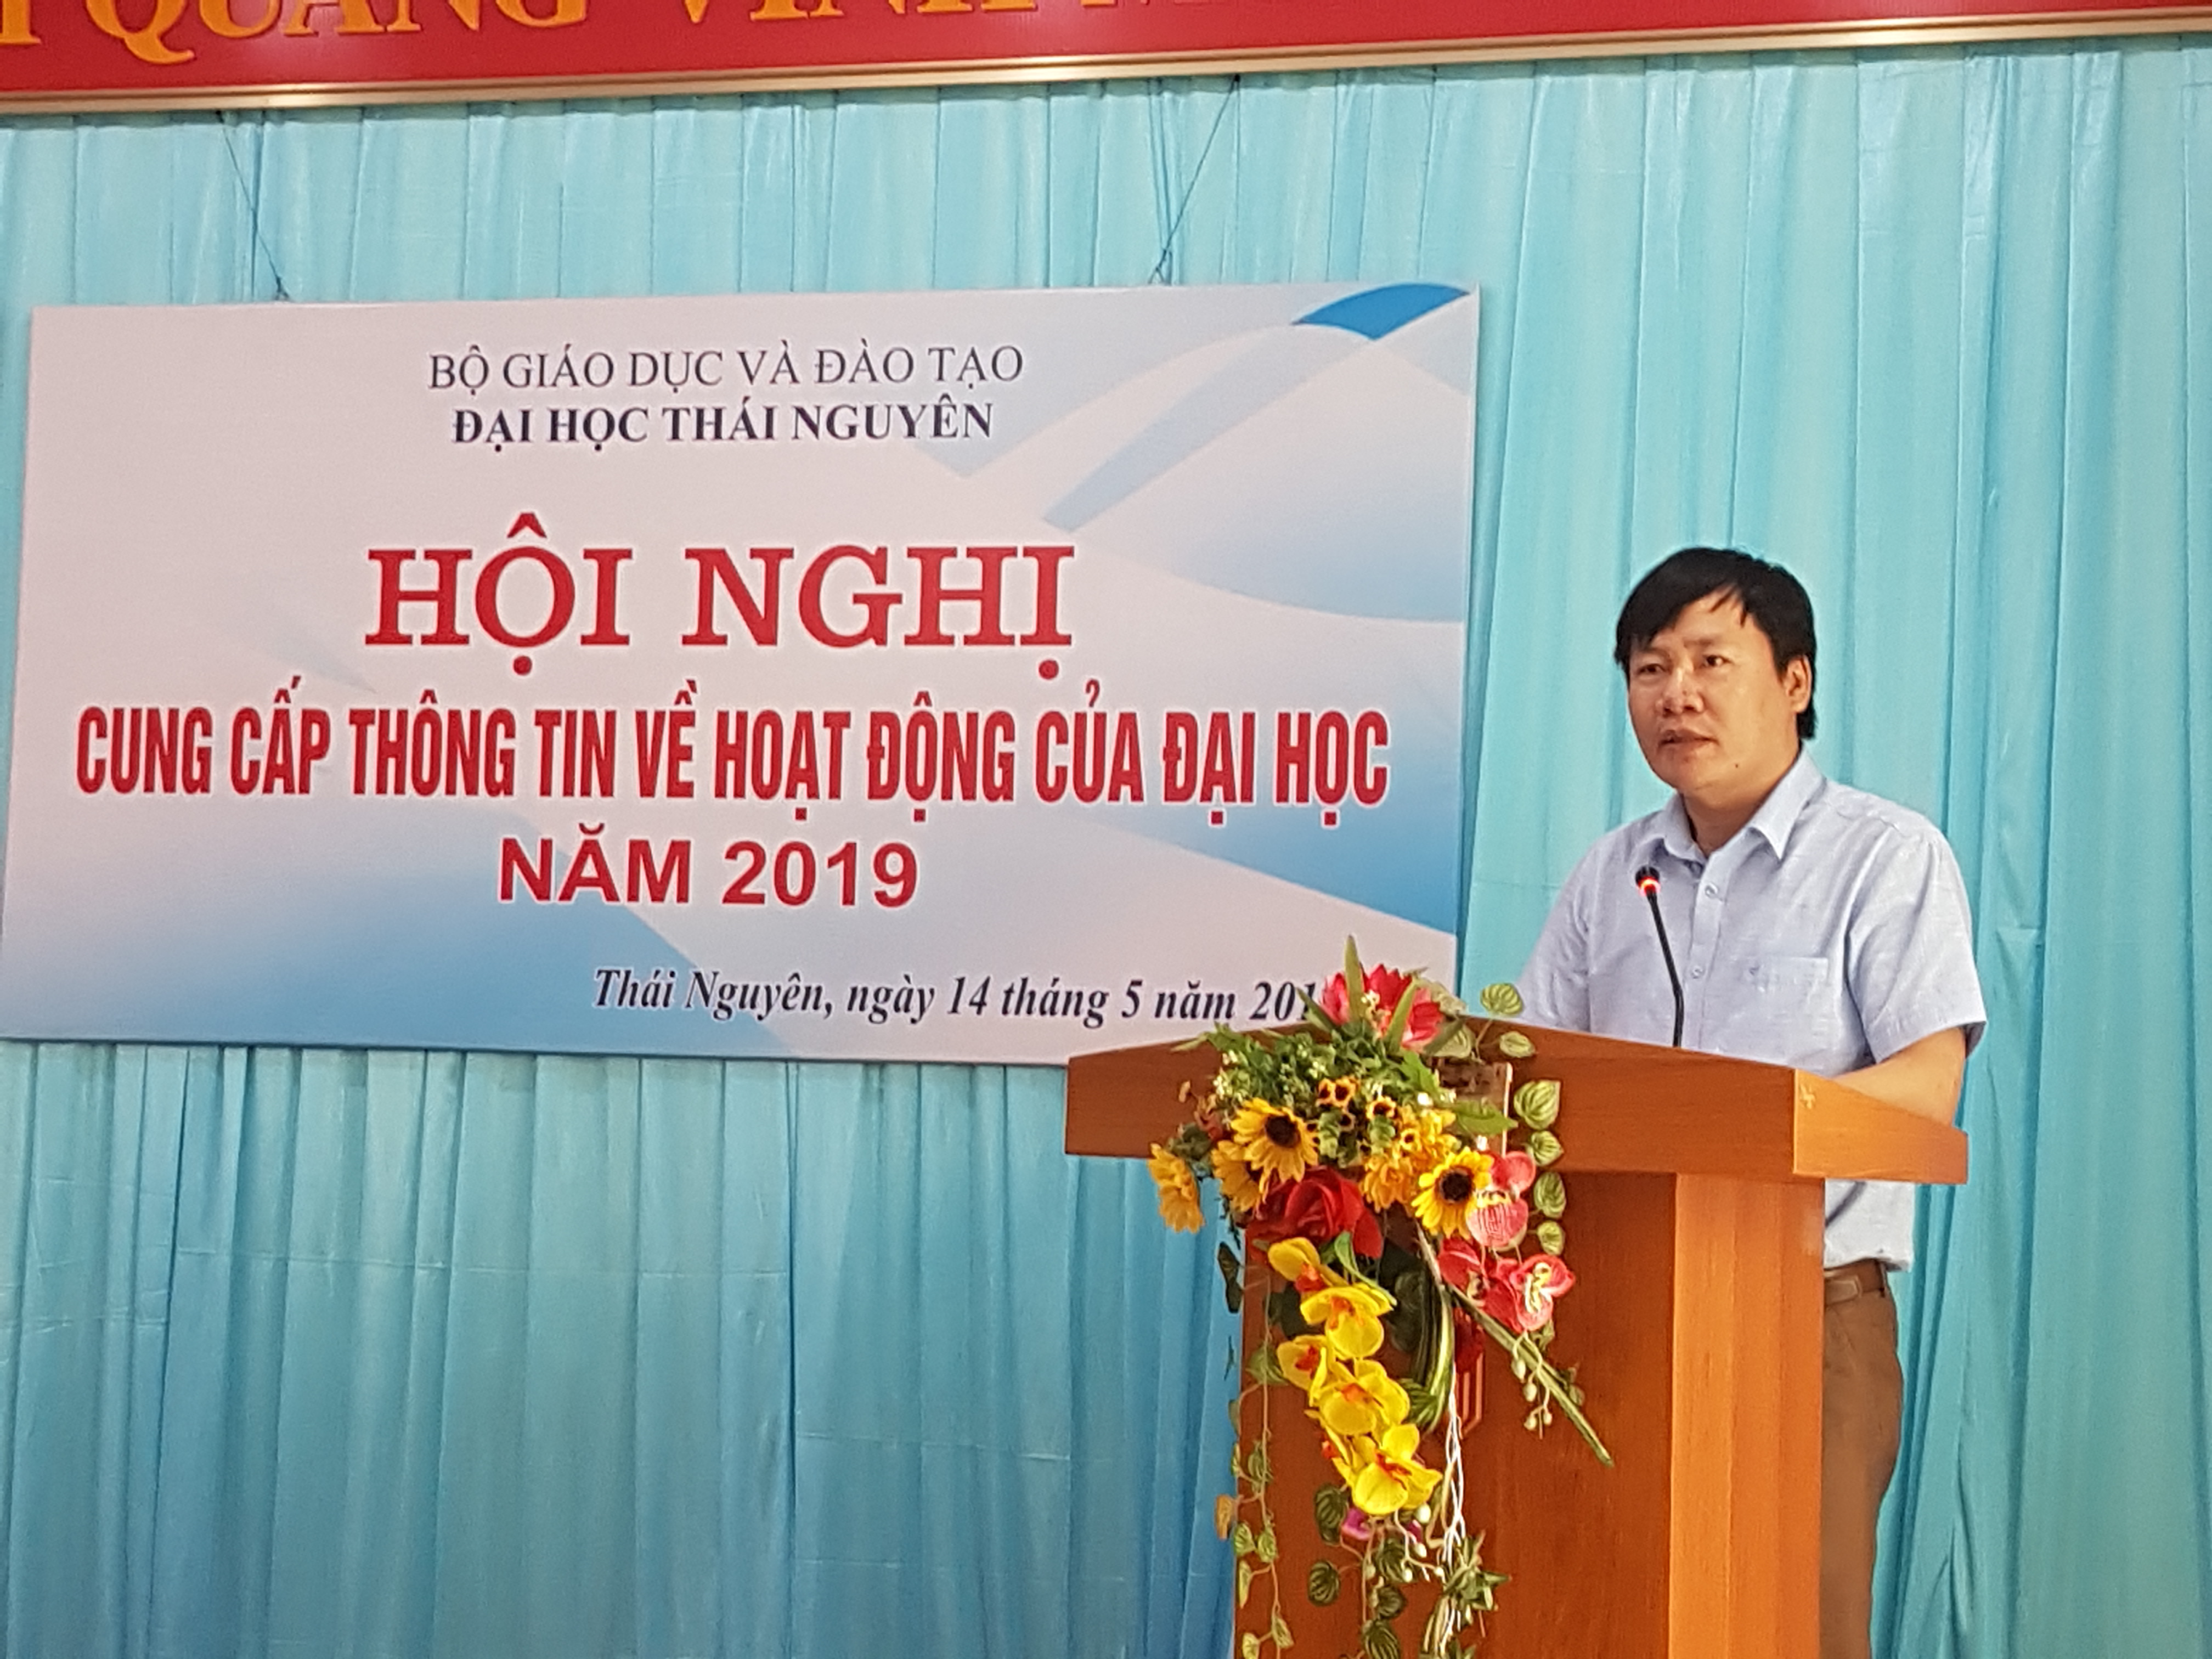 Đại học Thái Nguyên: Tổ chức hội nghị cung cấp thông tin cho các cơ quan báo chí - Hình 3